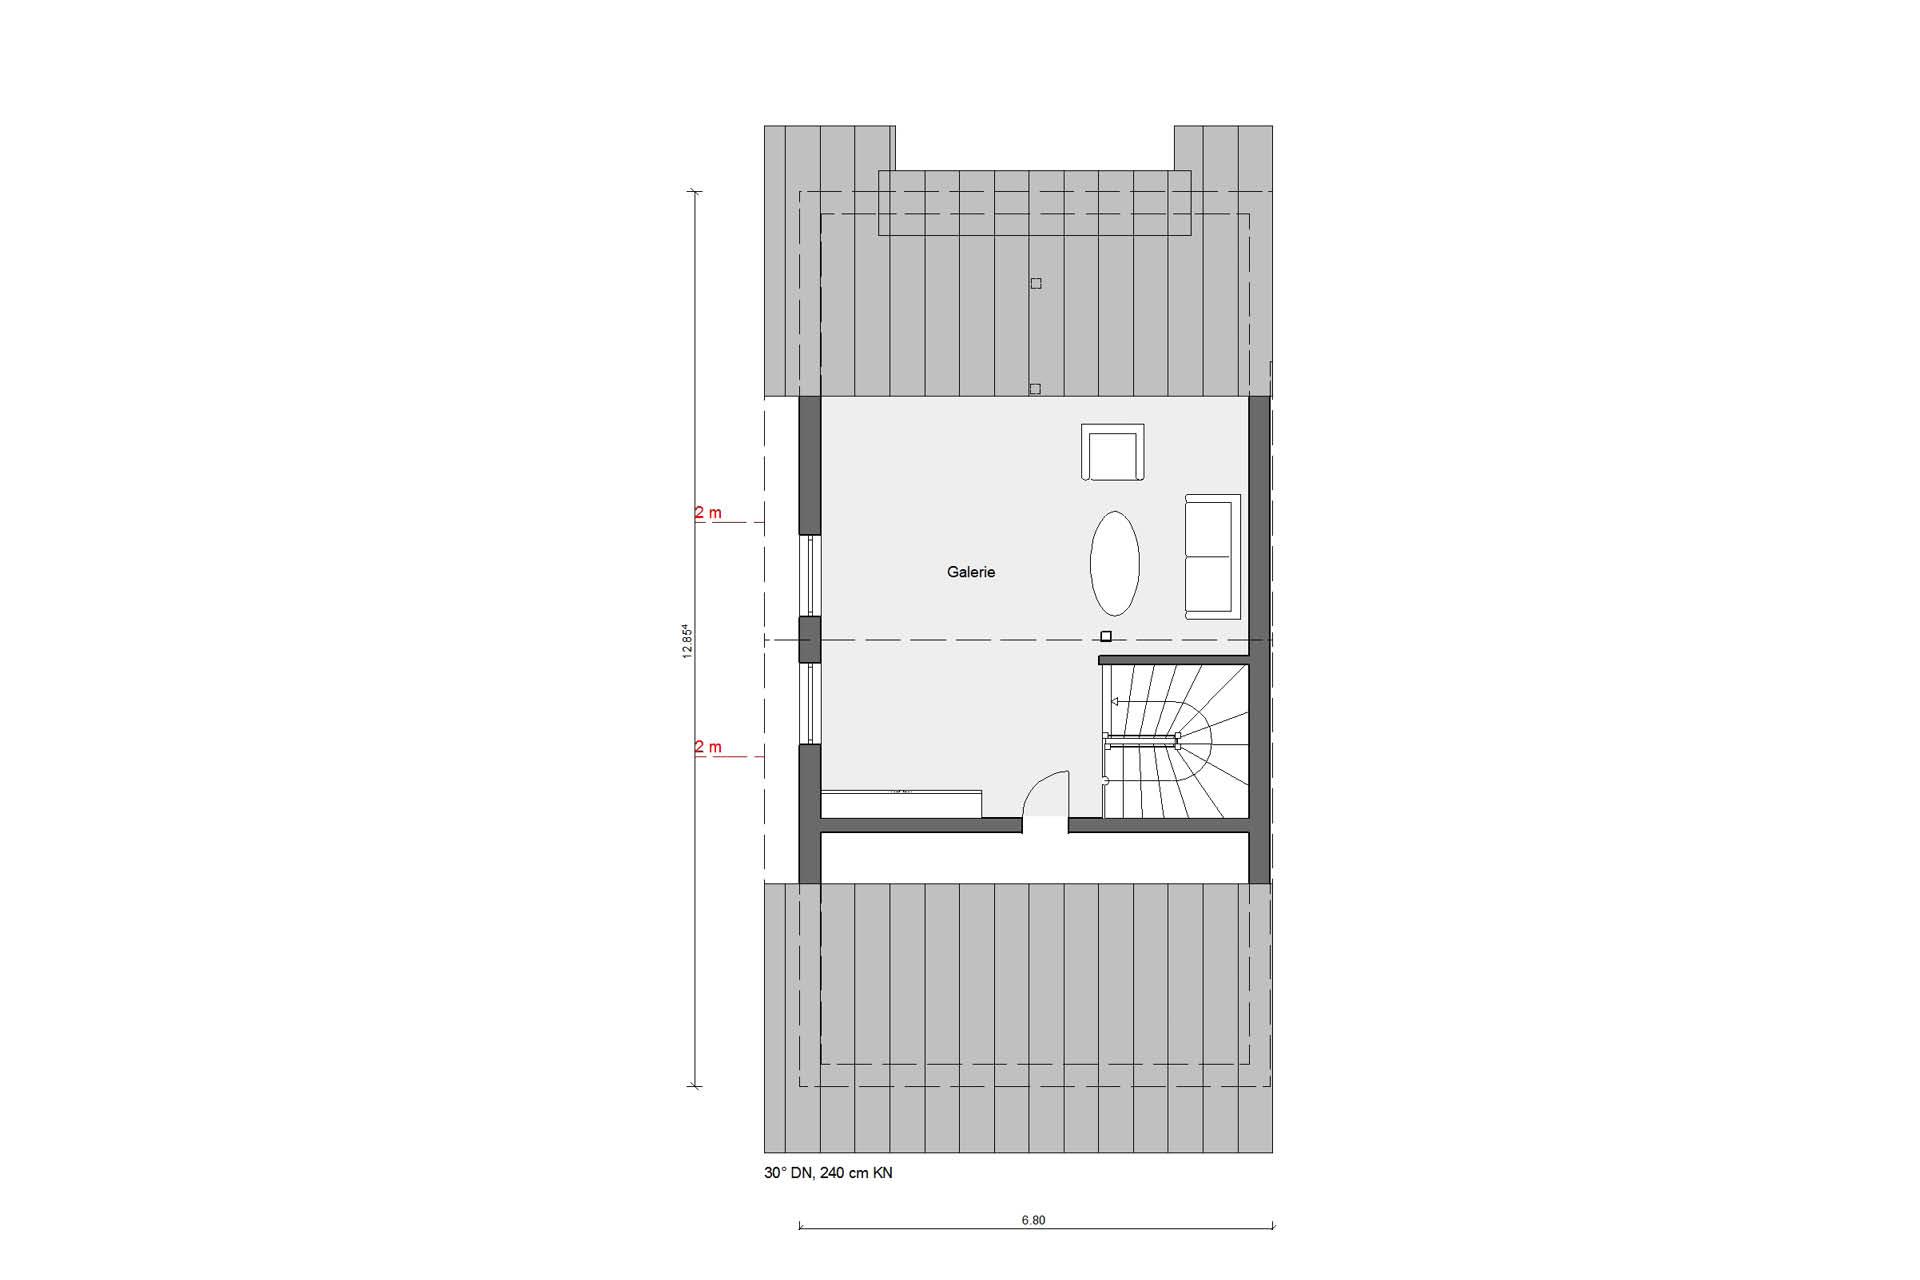 Pianta soffitta D 15-216.1 Casa a schiera d'angolo